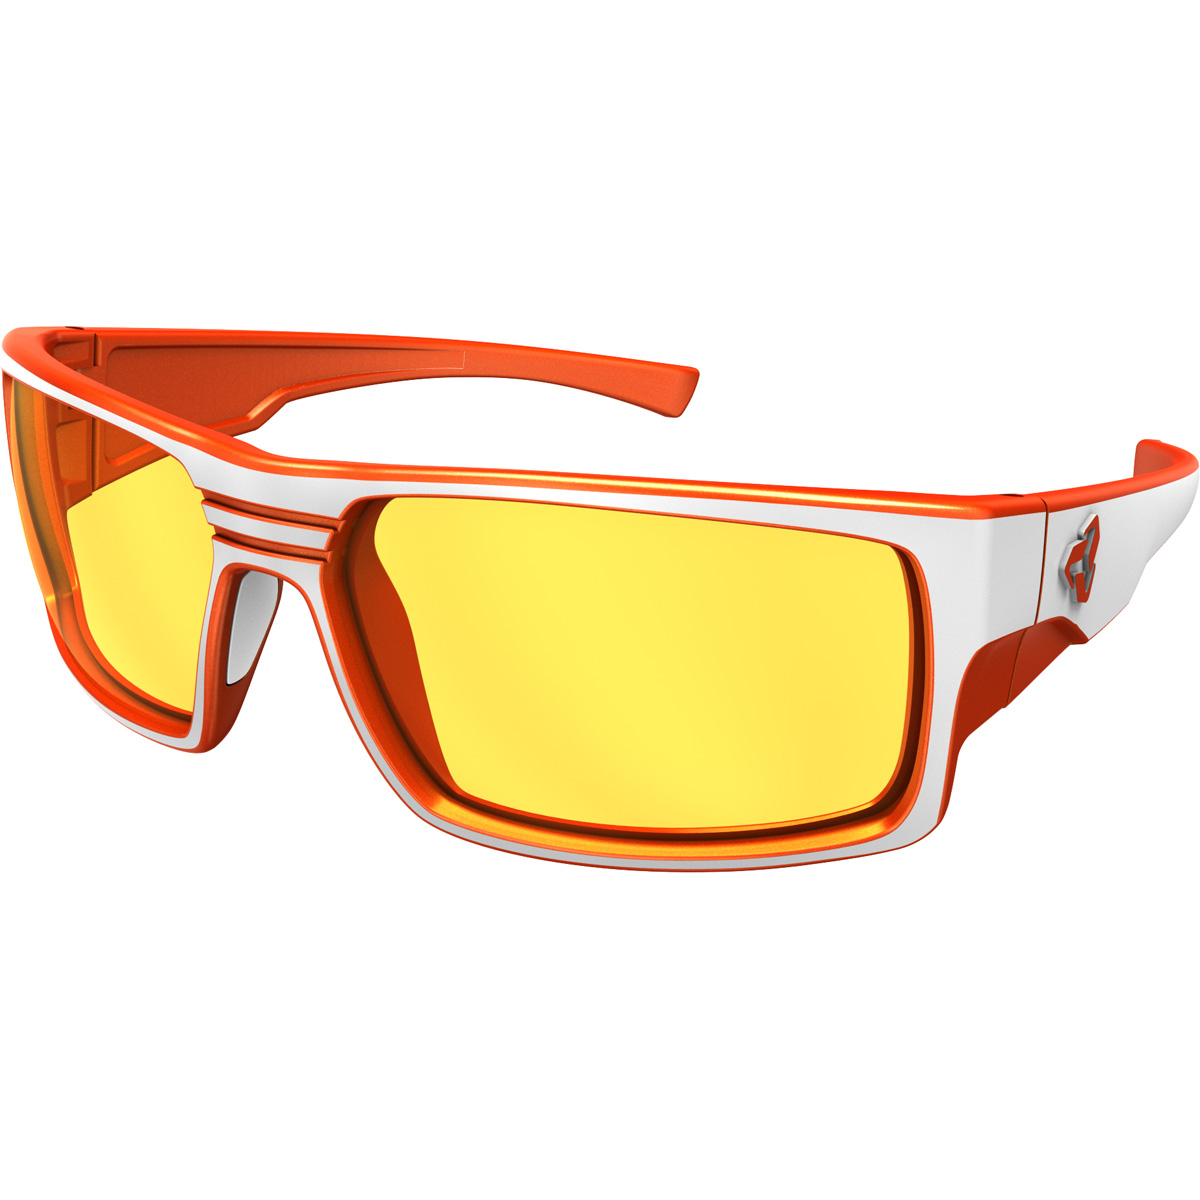 Ryders Eyewear Thorn Polarized AntiFog Sunglasses - 2-Tone (PHOTO WHITE-ORANGE / YELLOW LENS 76% - 27% ANTI-FOG) - image 1 of 1